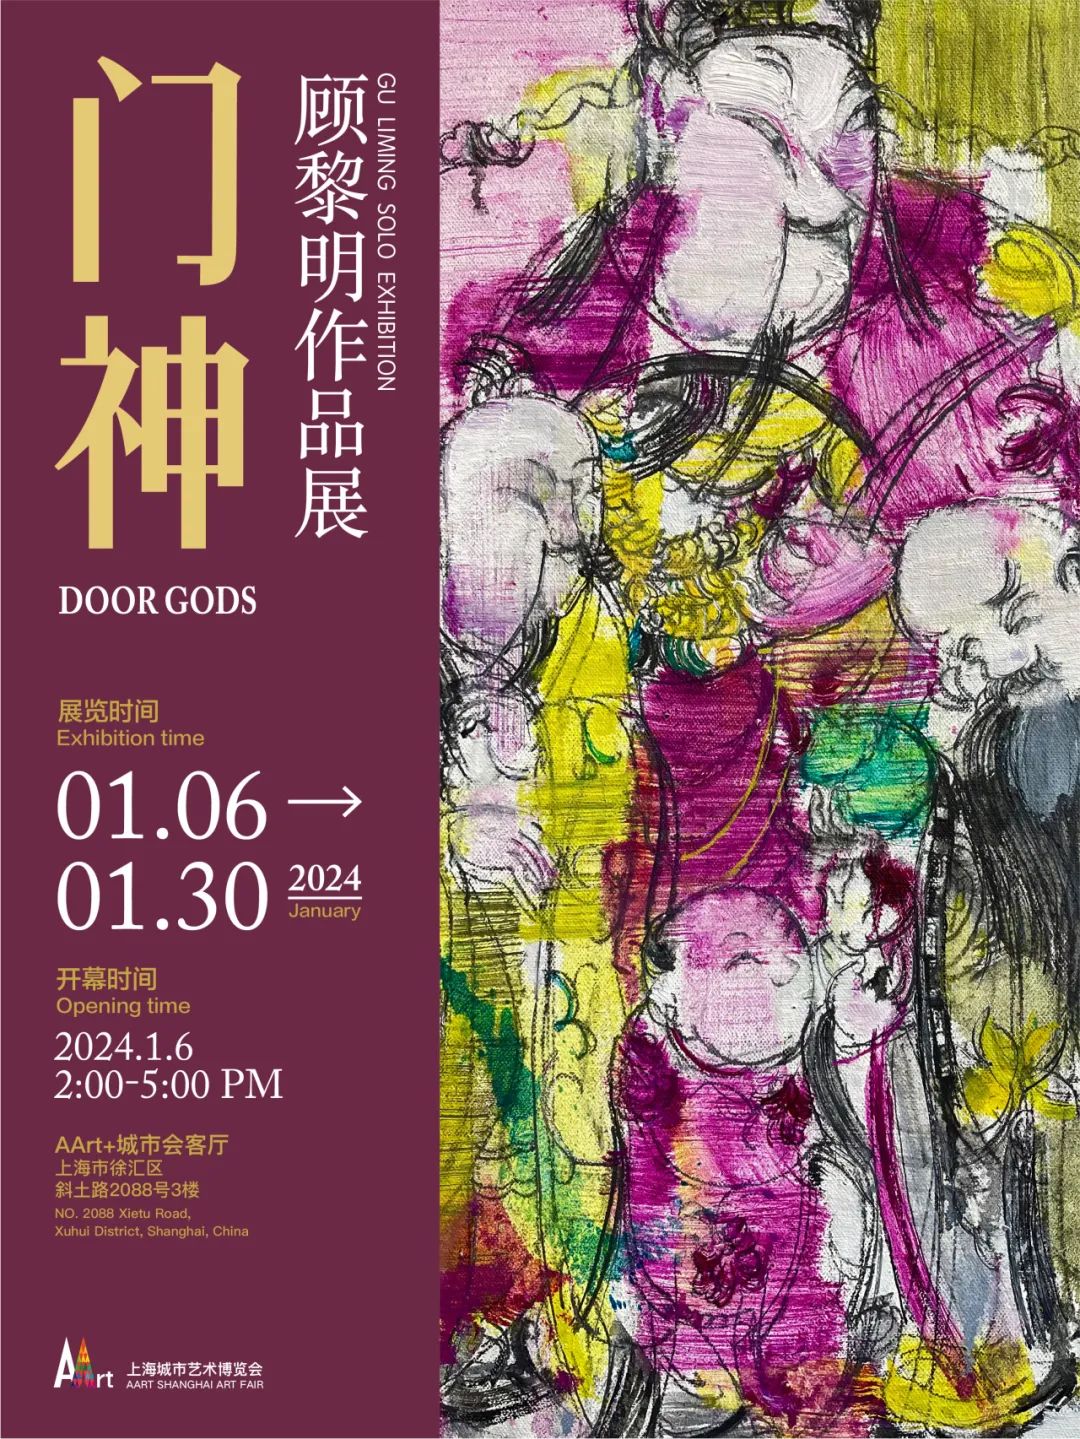 “门神——顾黎明作品展”将于2024年1月6日在上海开展